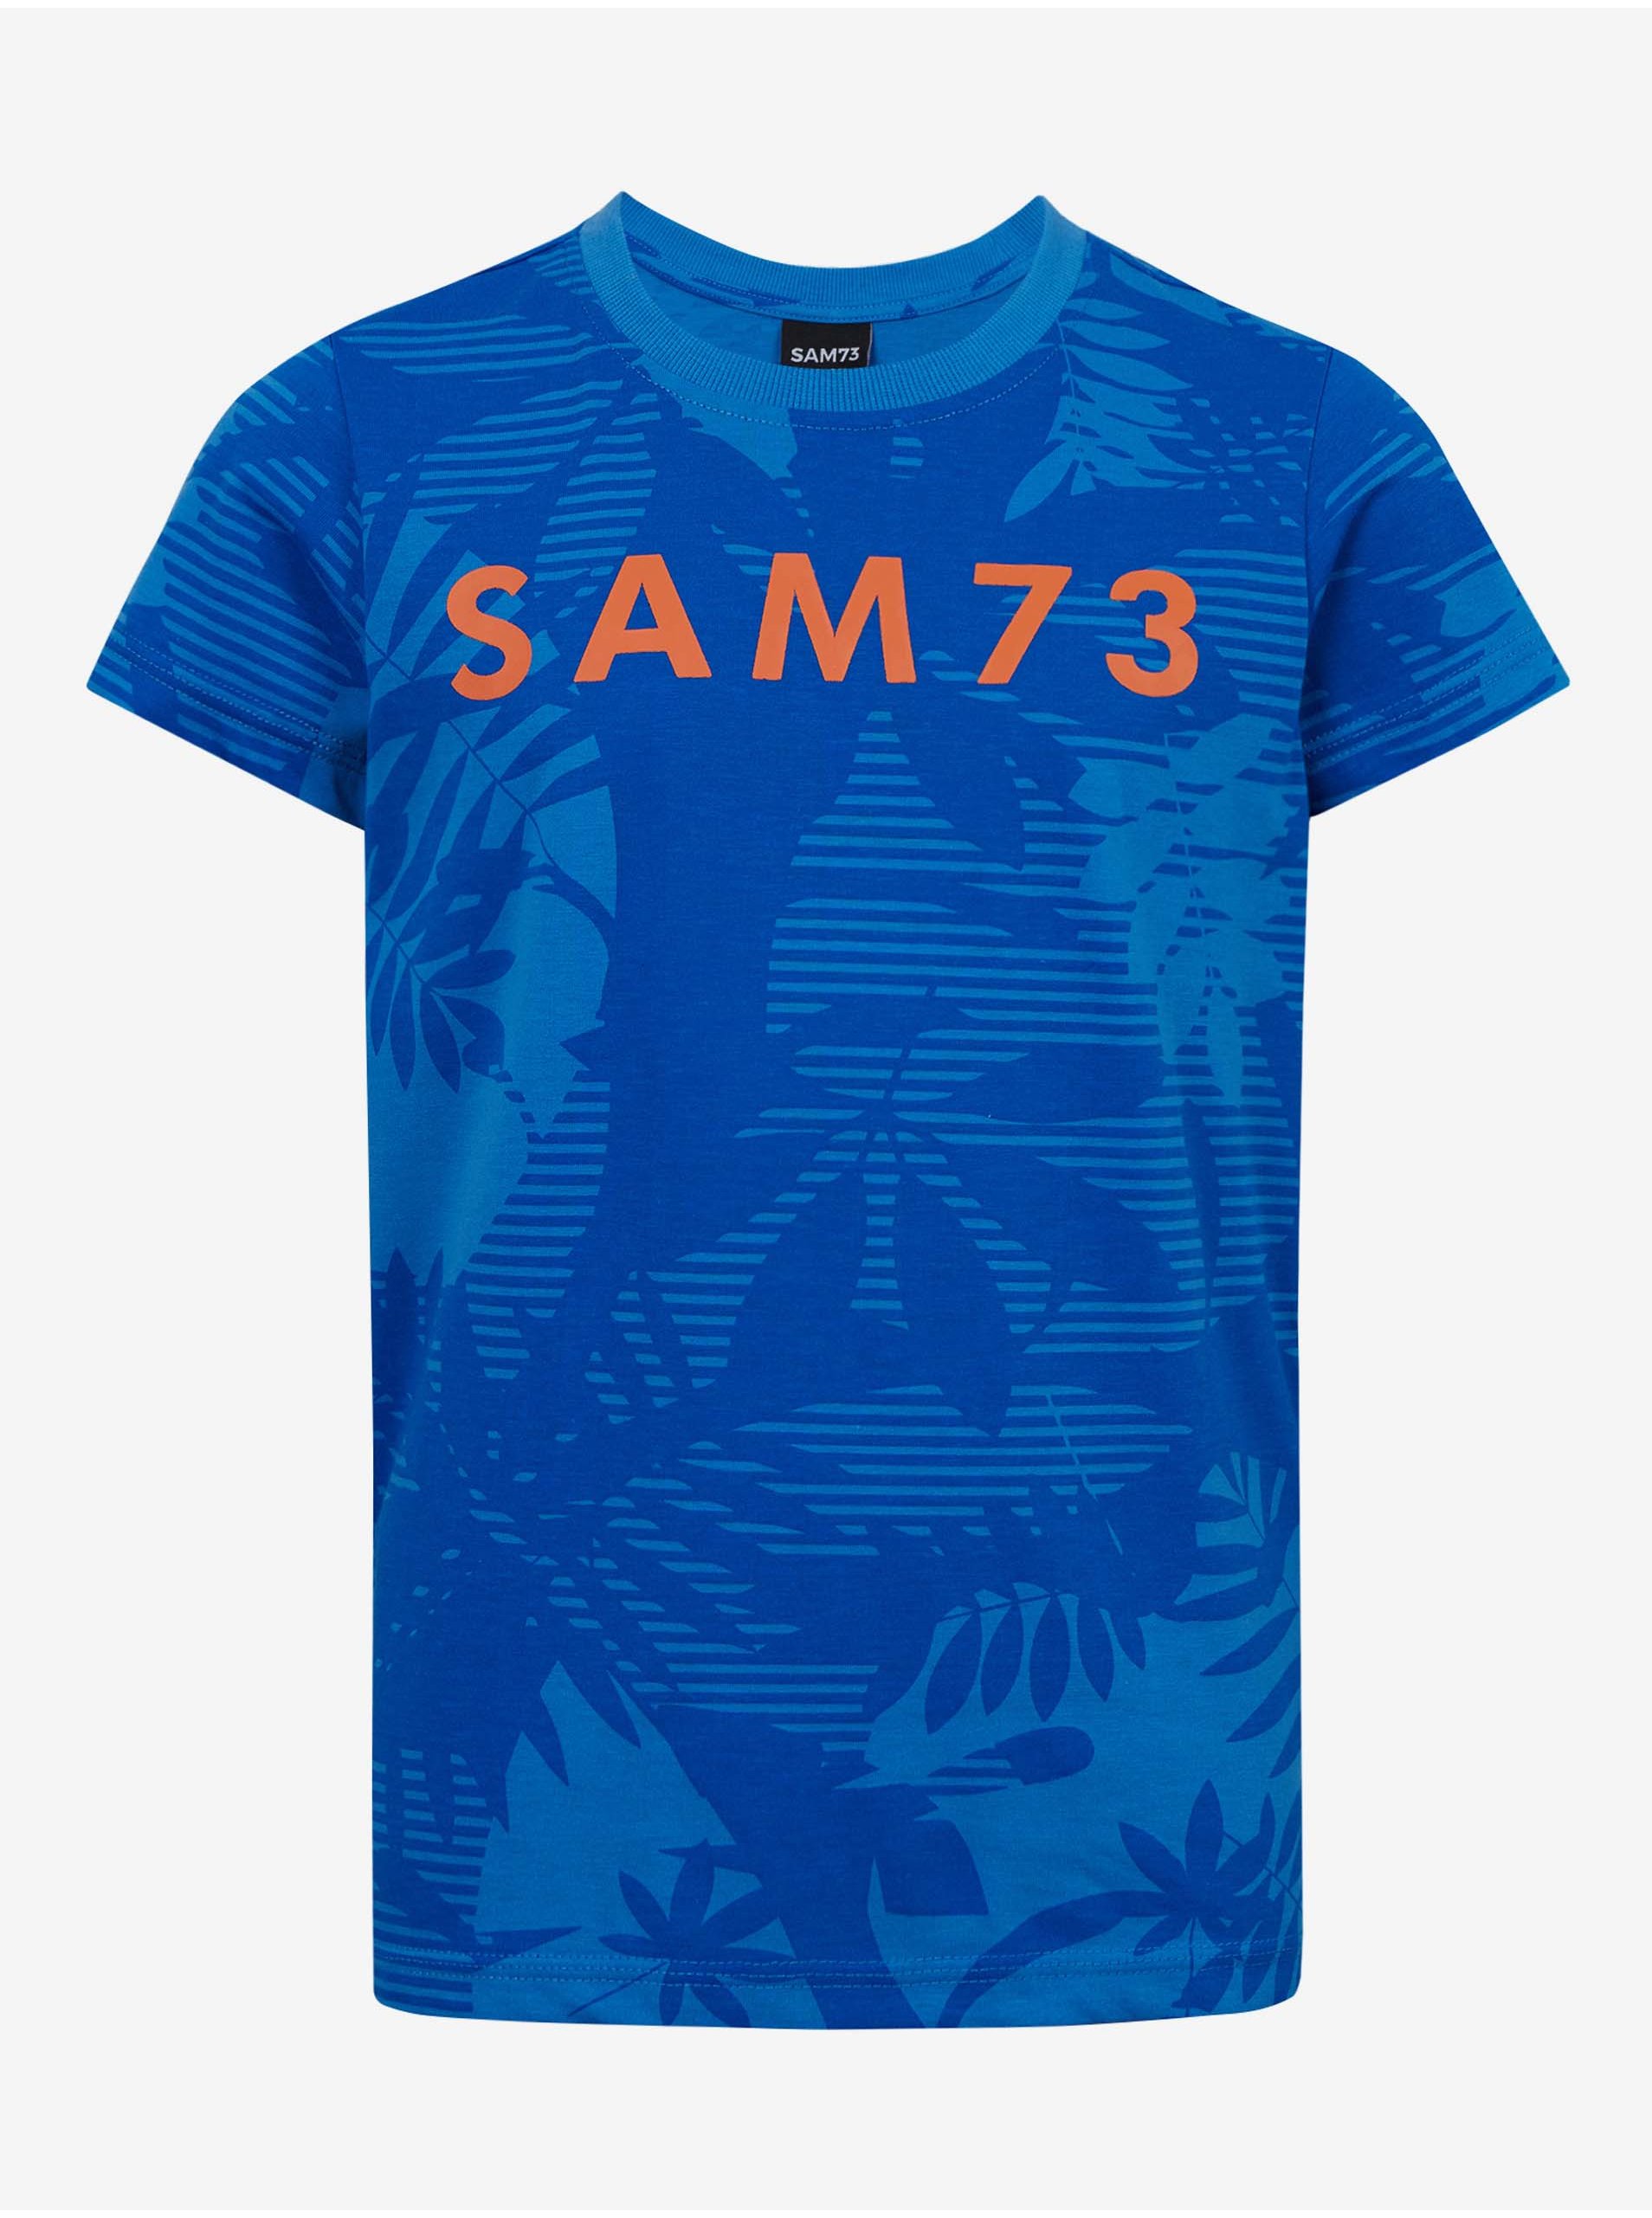 Lacno Modré chlapčenské vzorované tričko SAM 73 Theodore